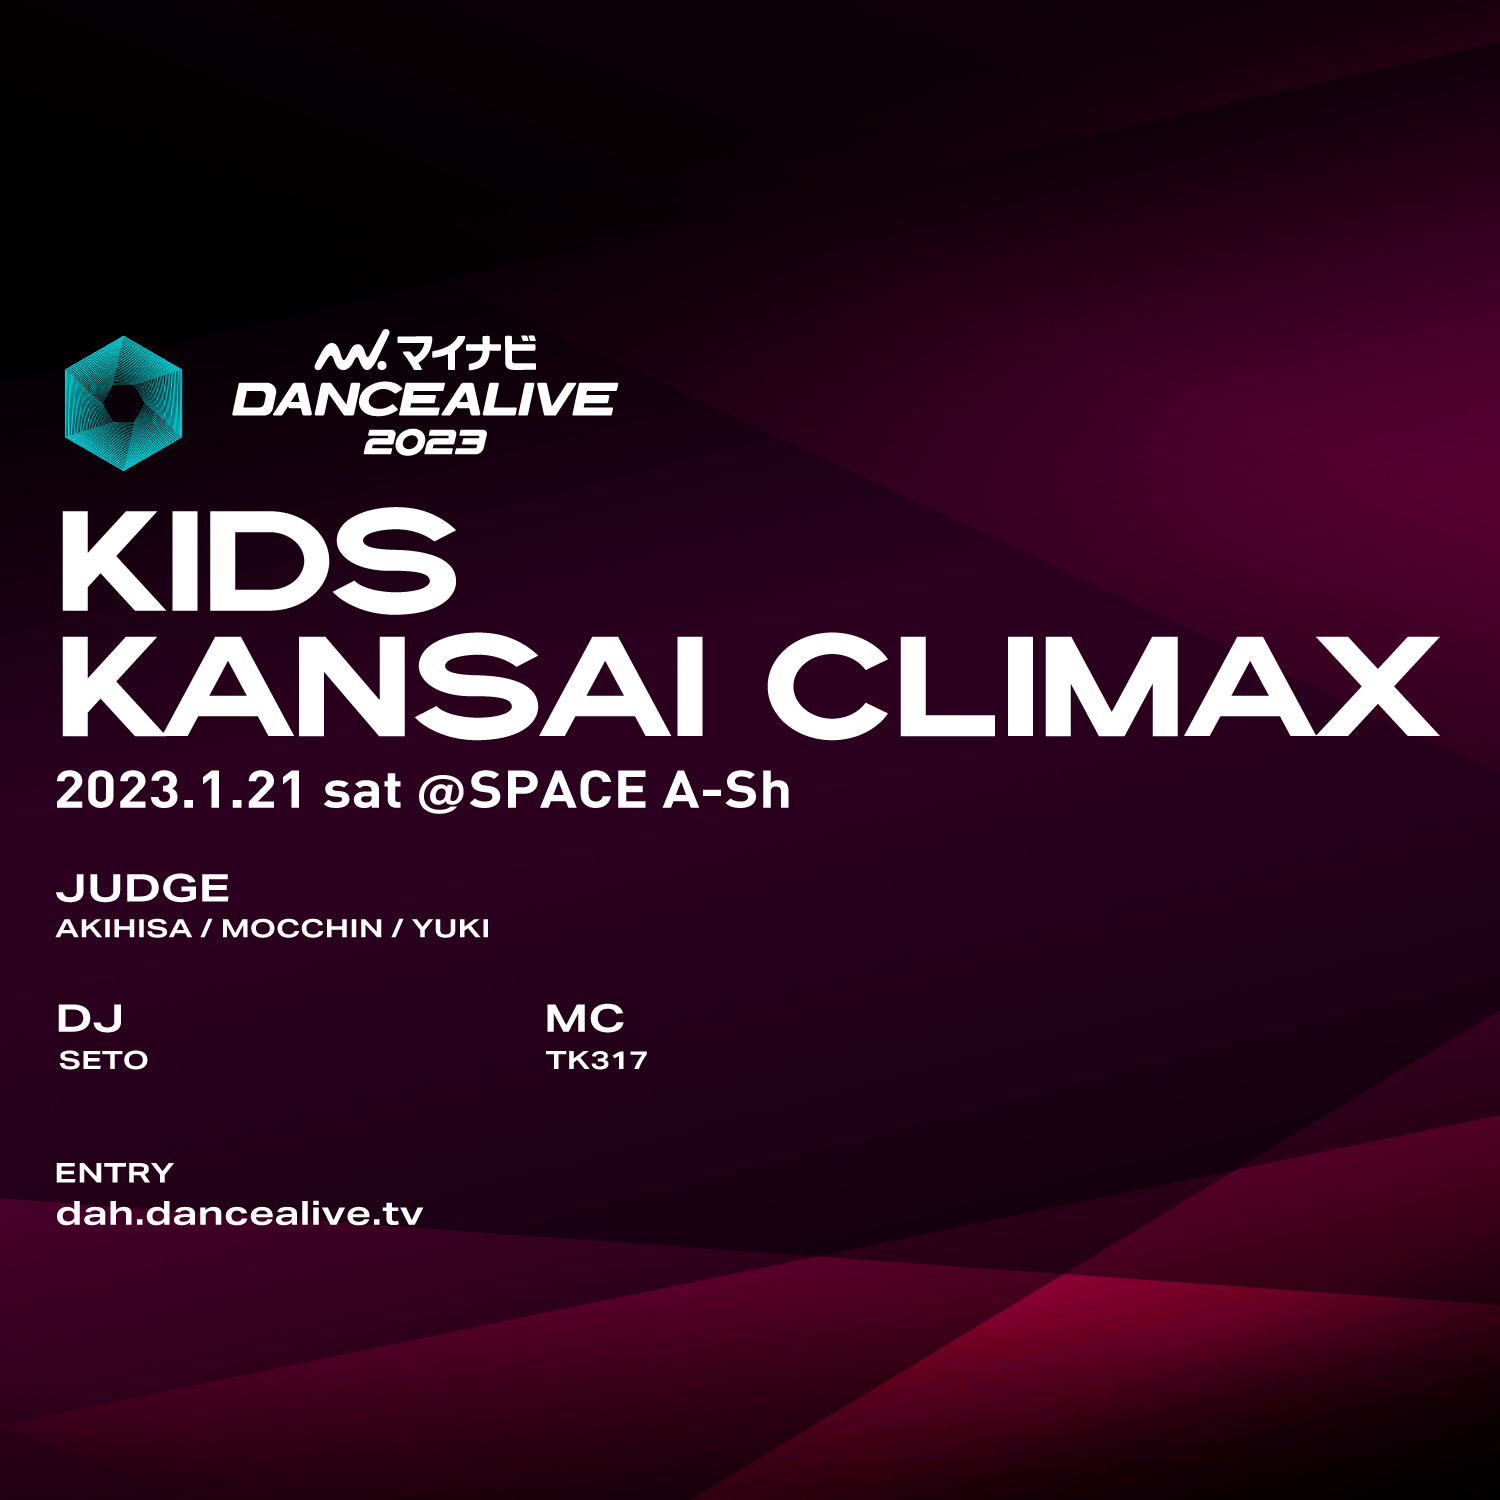 DANCE ALIVE KIDS KANSAI CLIMAX 1.21